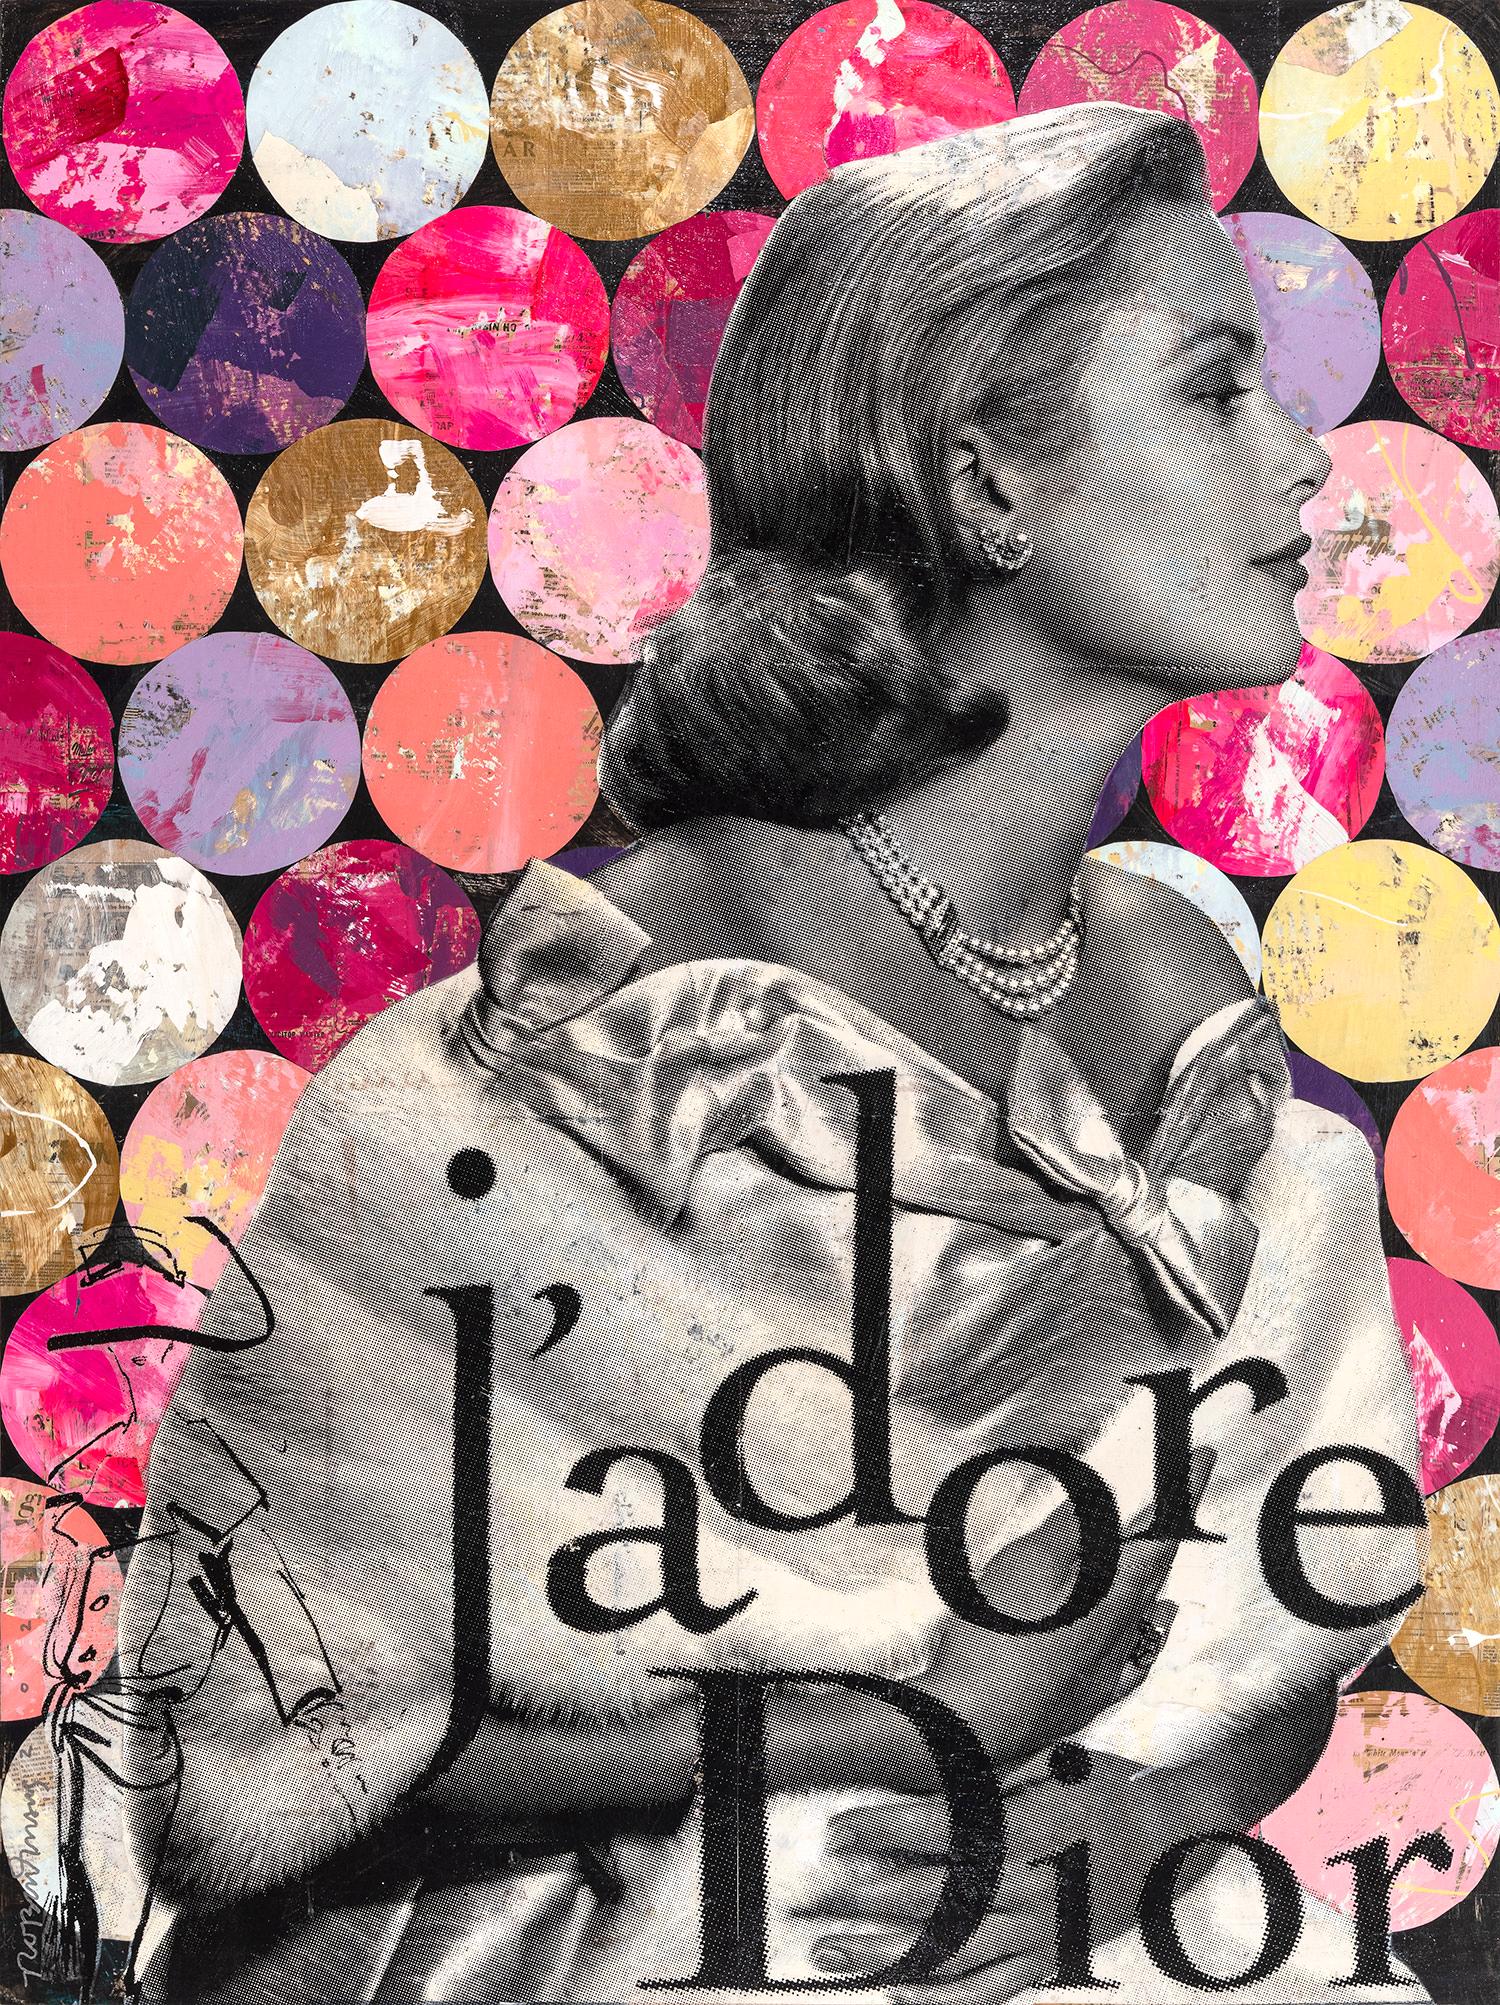 "Du siehst aus wie du" Grace Kelly & J'adore Collage Zusammensetzung auf Panel Board